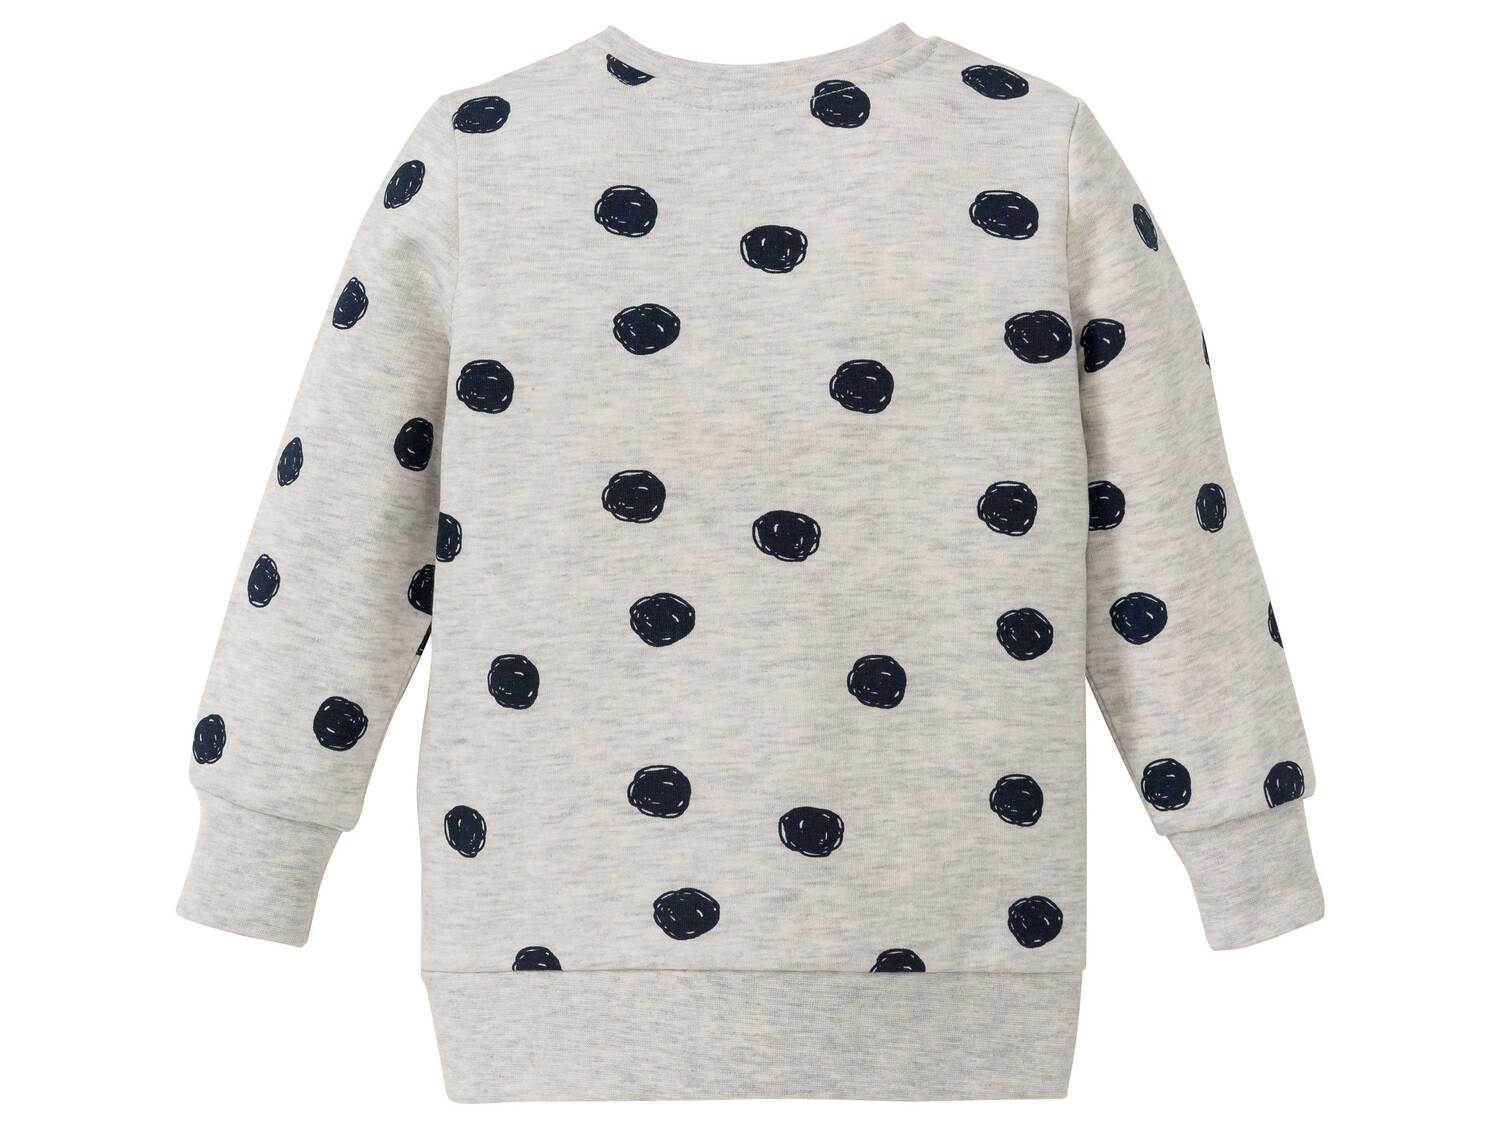 Bluza dresowa Lupilu, cena 19,99 PLN 
- rozmiary: 86-116
- wysoka zawartość bawełny
- ...